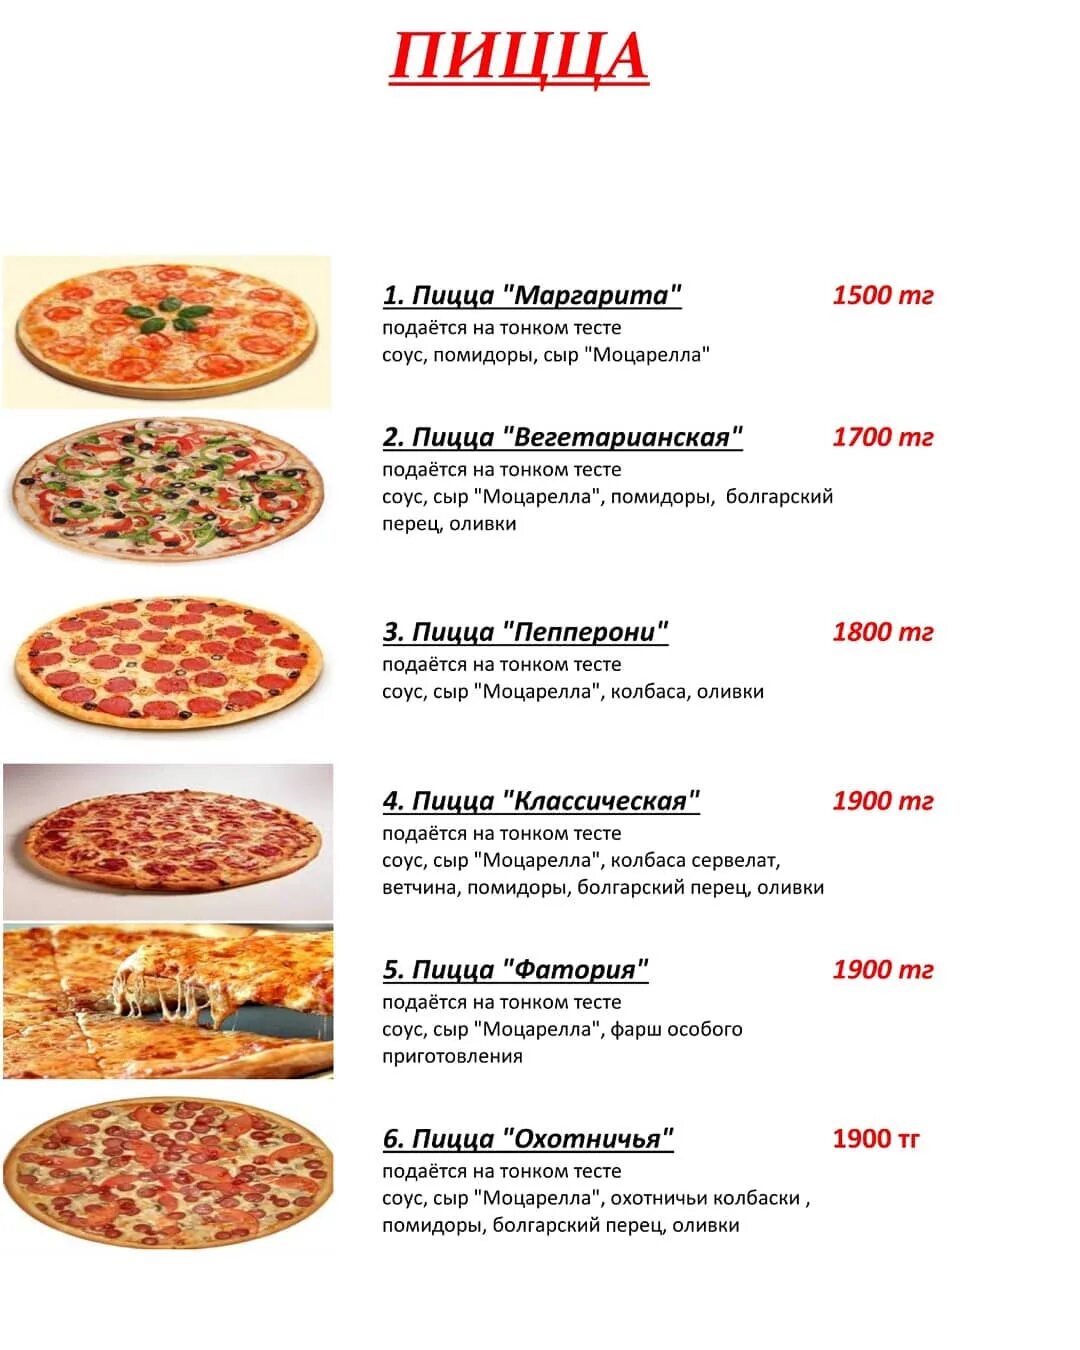 Калорийность пиццы пепперони. Тест 1 на пиццу